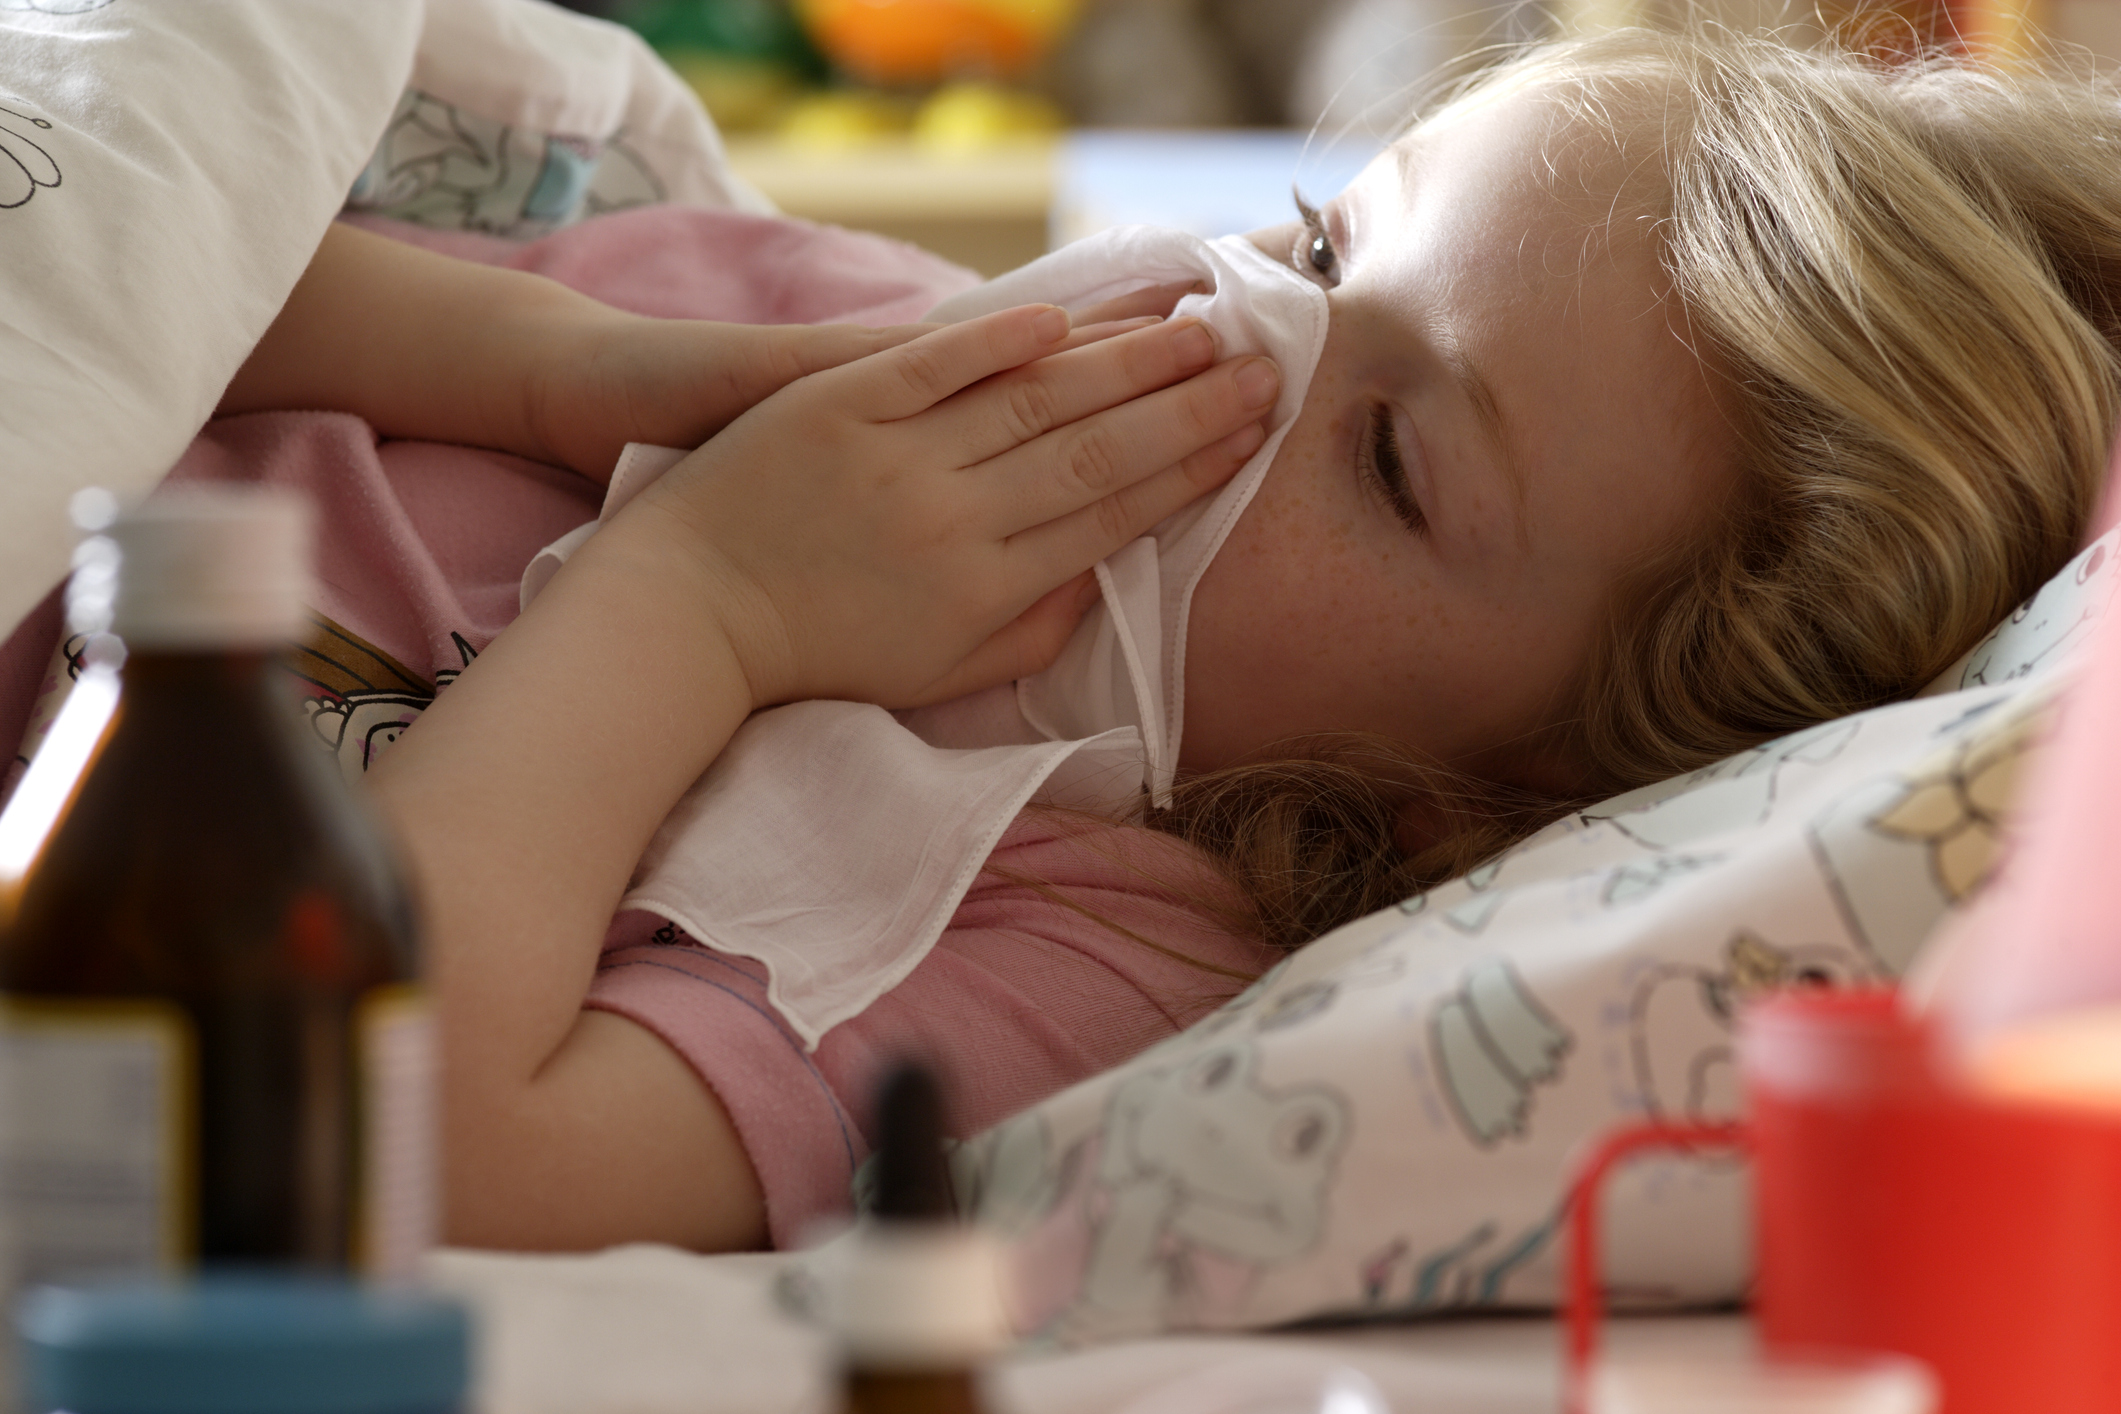 Захворюваність на грип і ГРВІ в Києві зростає, але епідпоріг не перевищено